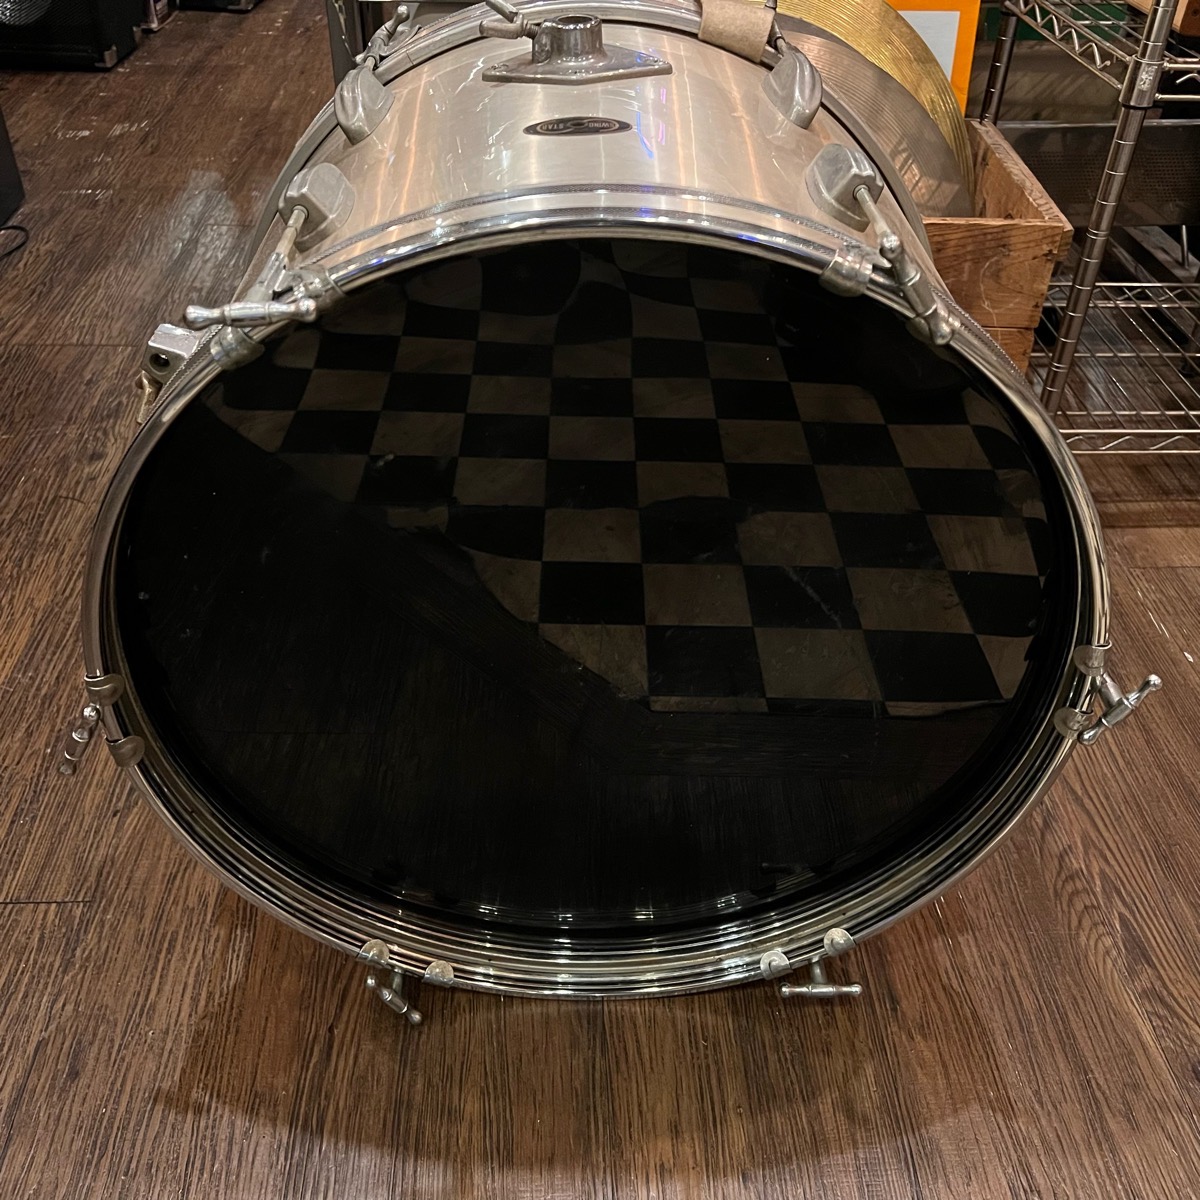 TamatamaSwingStar большой барабан самый первый период Vintage 20×14 дюймовый серебряный -GrunSound-h352-